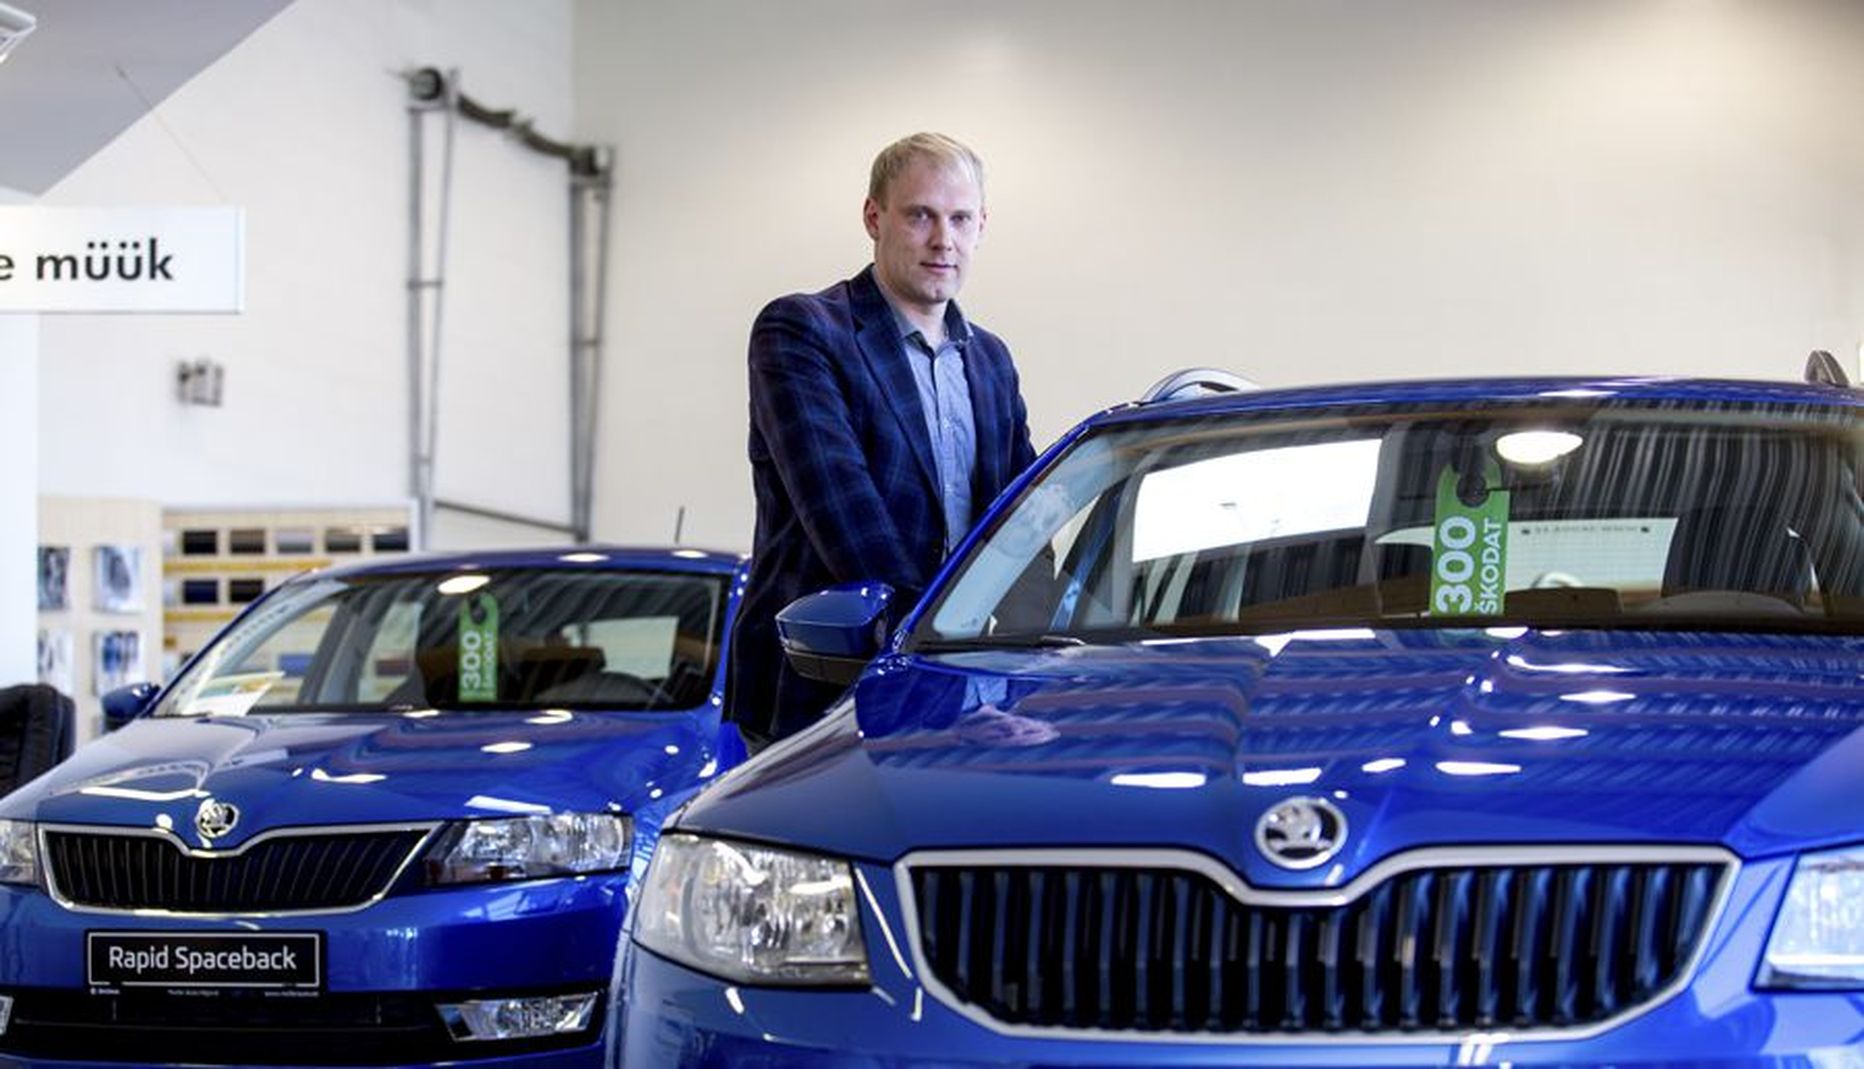 Osaühingu Folk Auto omanik Priit Simberg usub, et keskendumine Škoda margile loob kõik eeldused selleks, et töötajate teadmised selle margi kohta muutuvad veelgi detailsemateks.